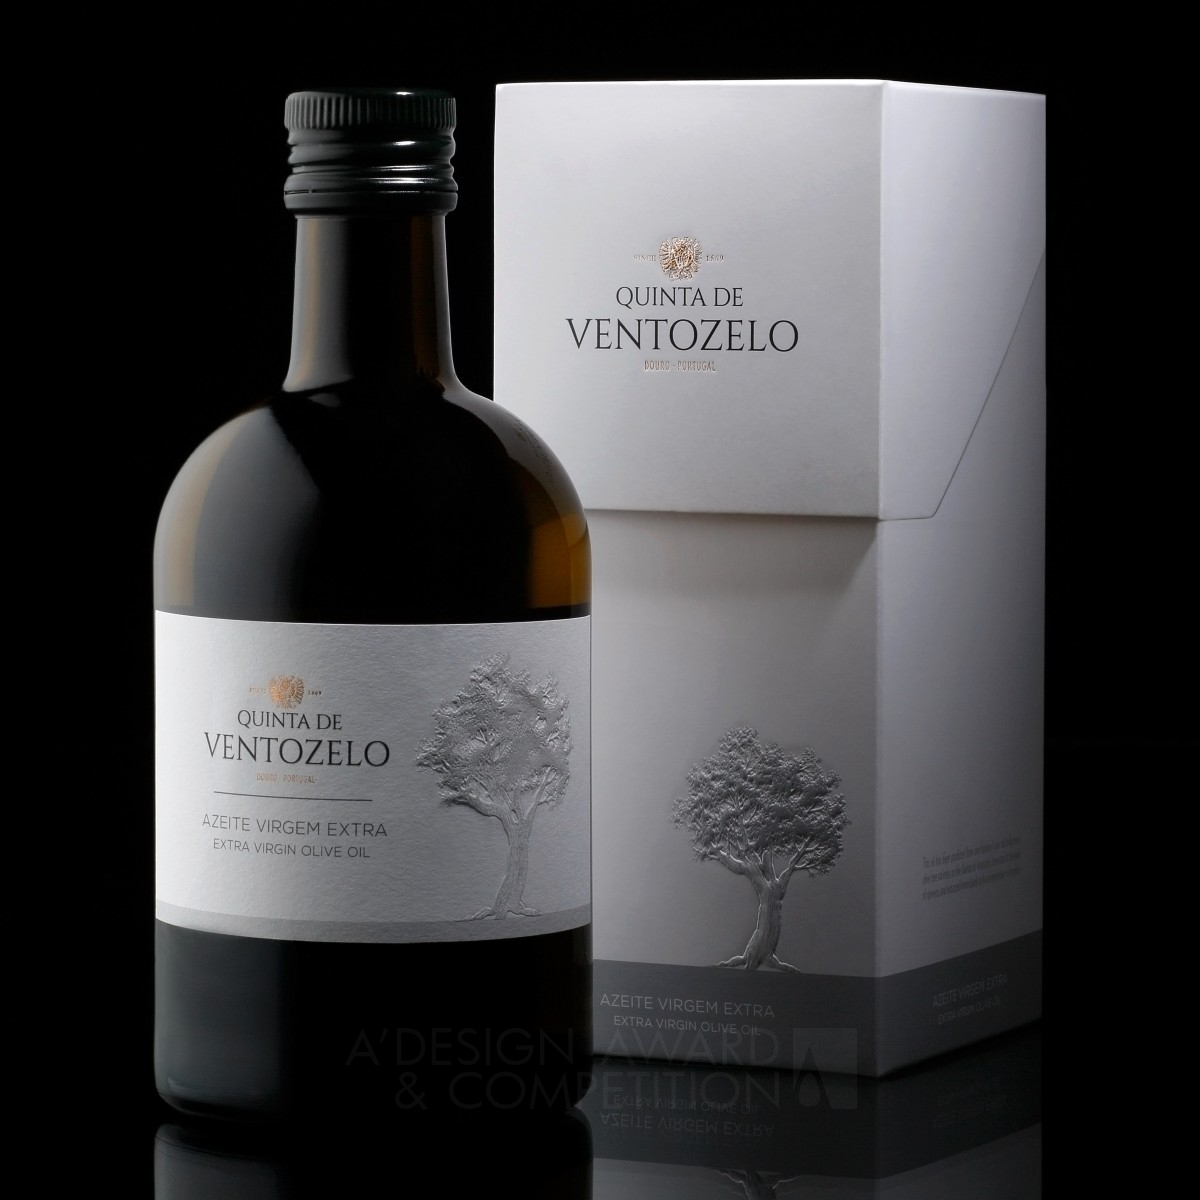 Quinta de Ventozelo olive oil Packaging by Omdesign Golden Packaging Design Award Winner 2017 